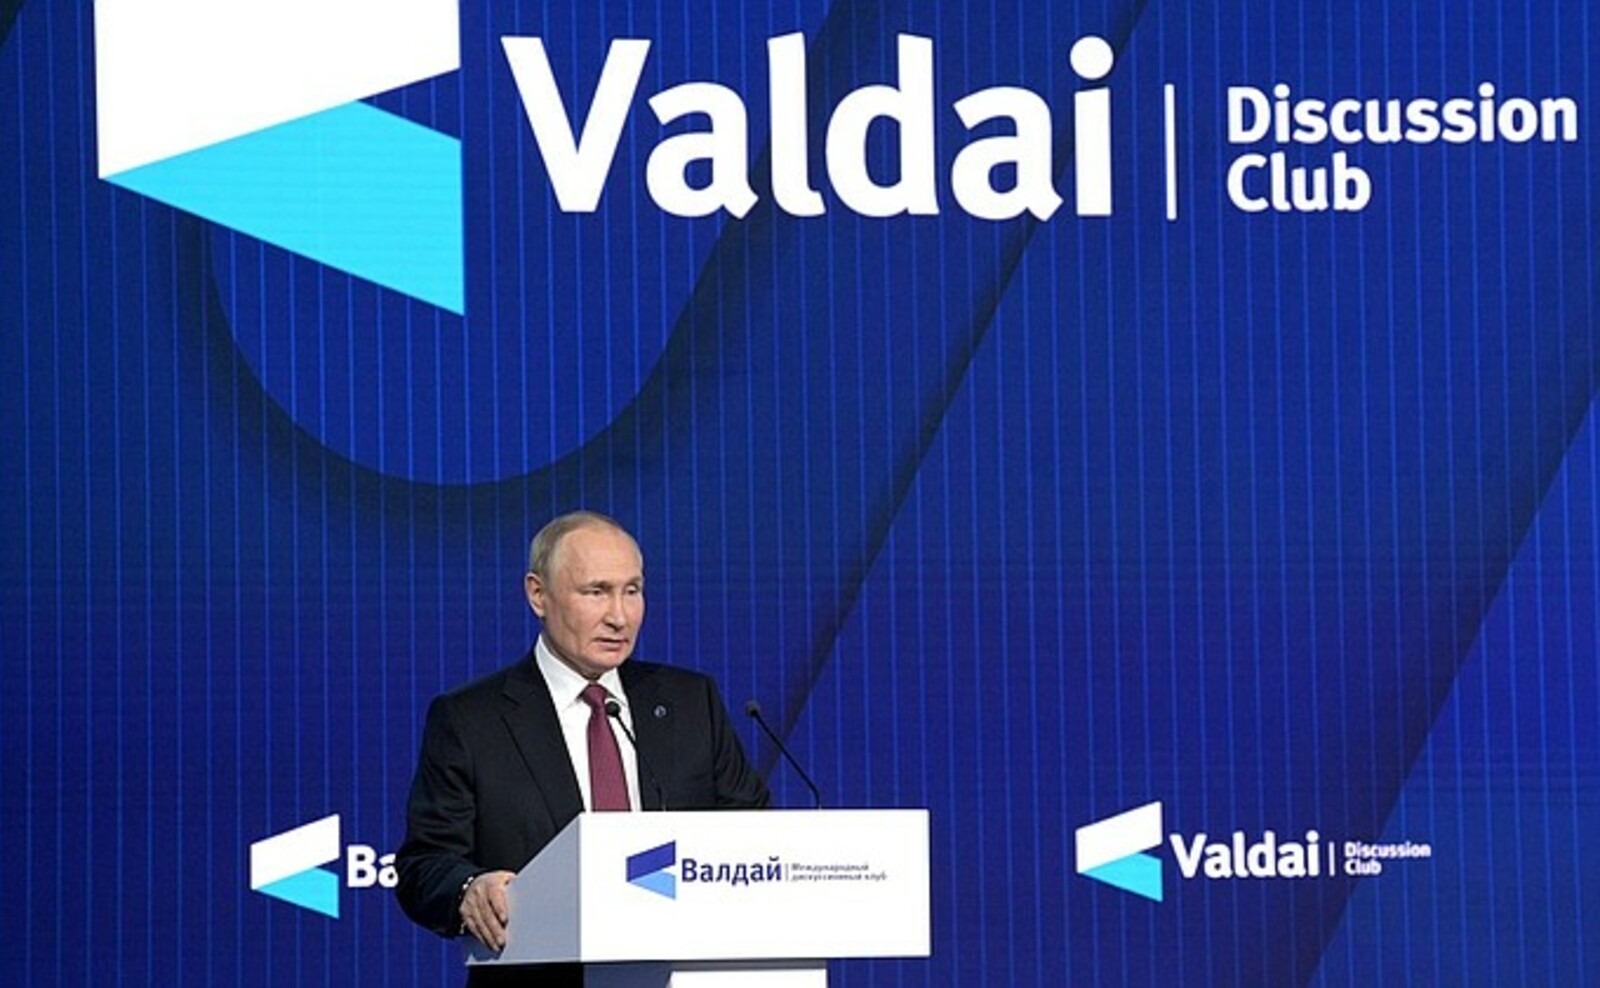 Владимир Путин: “Беҙ үтә лә мөһим һәм етди үҙгәрешле тарихи осор башында торабыҙ”